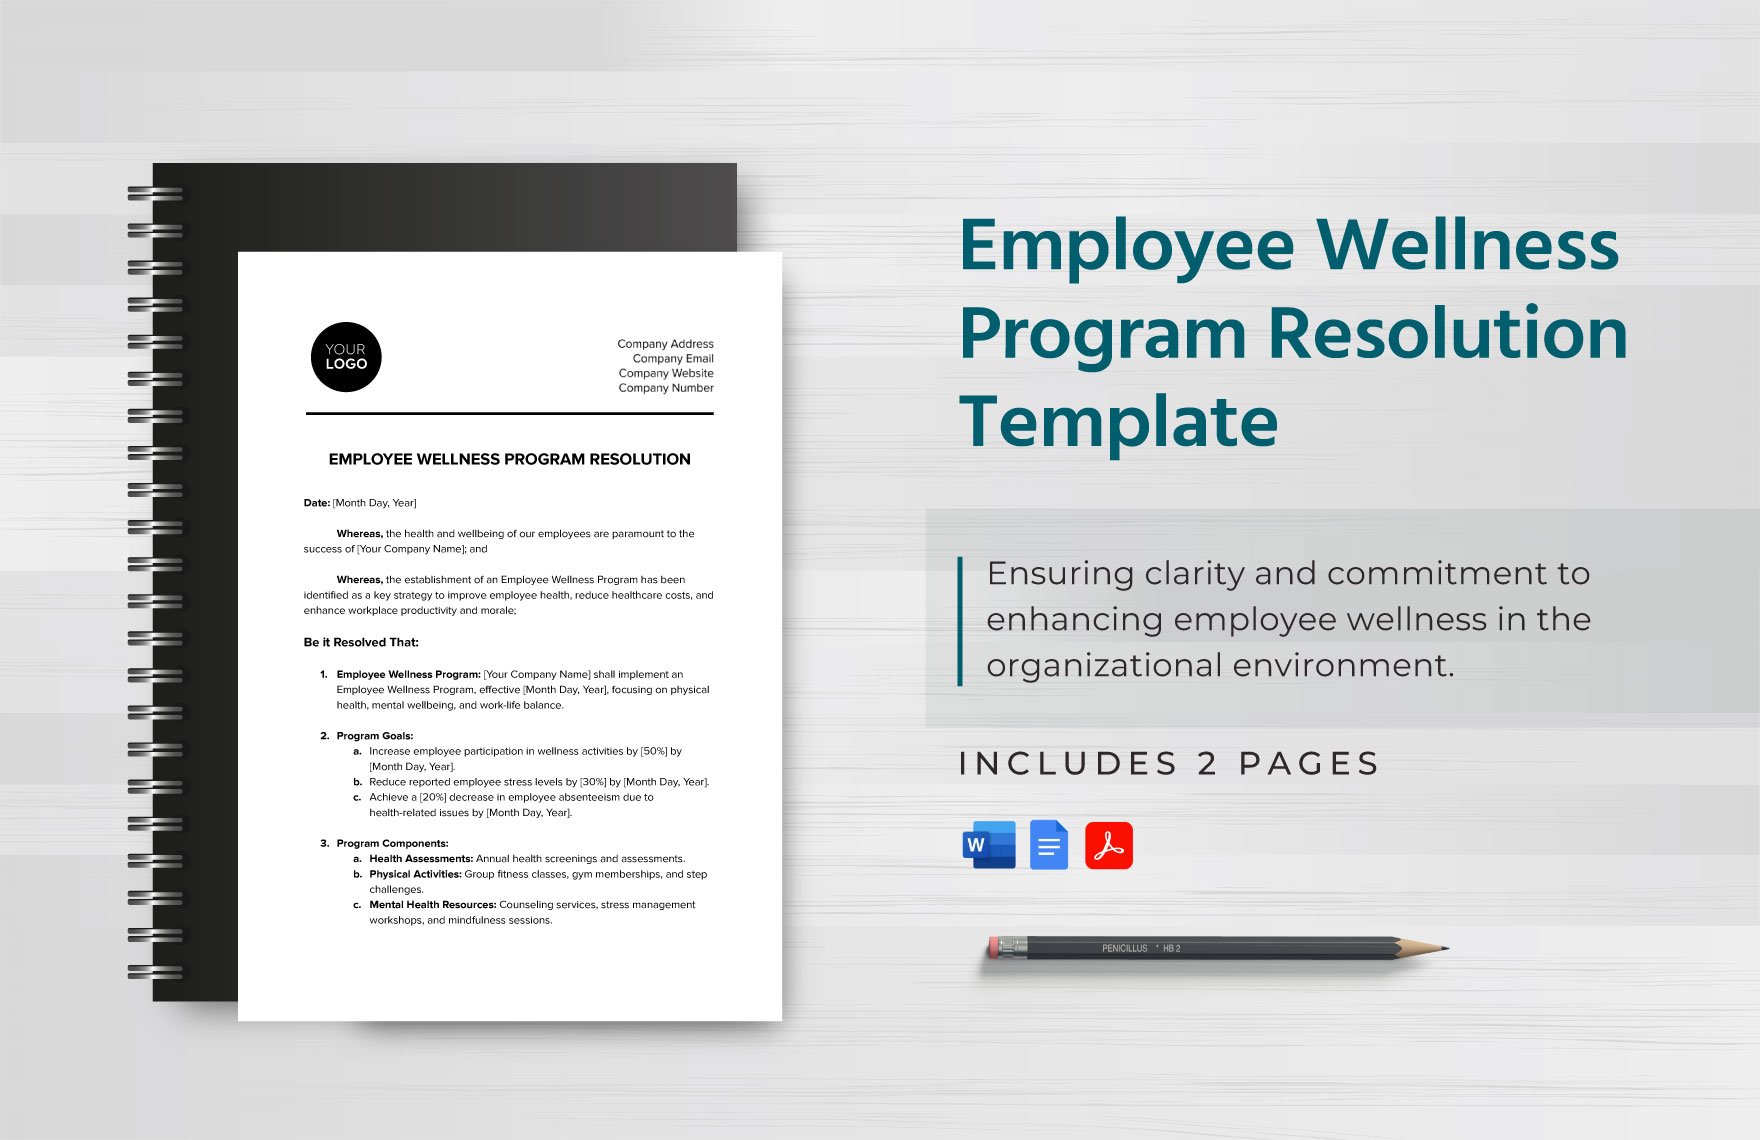 Employee Wellness Program Resolution Template